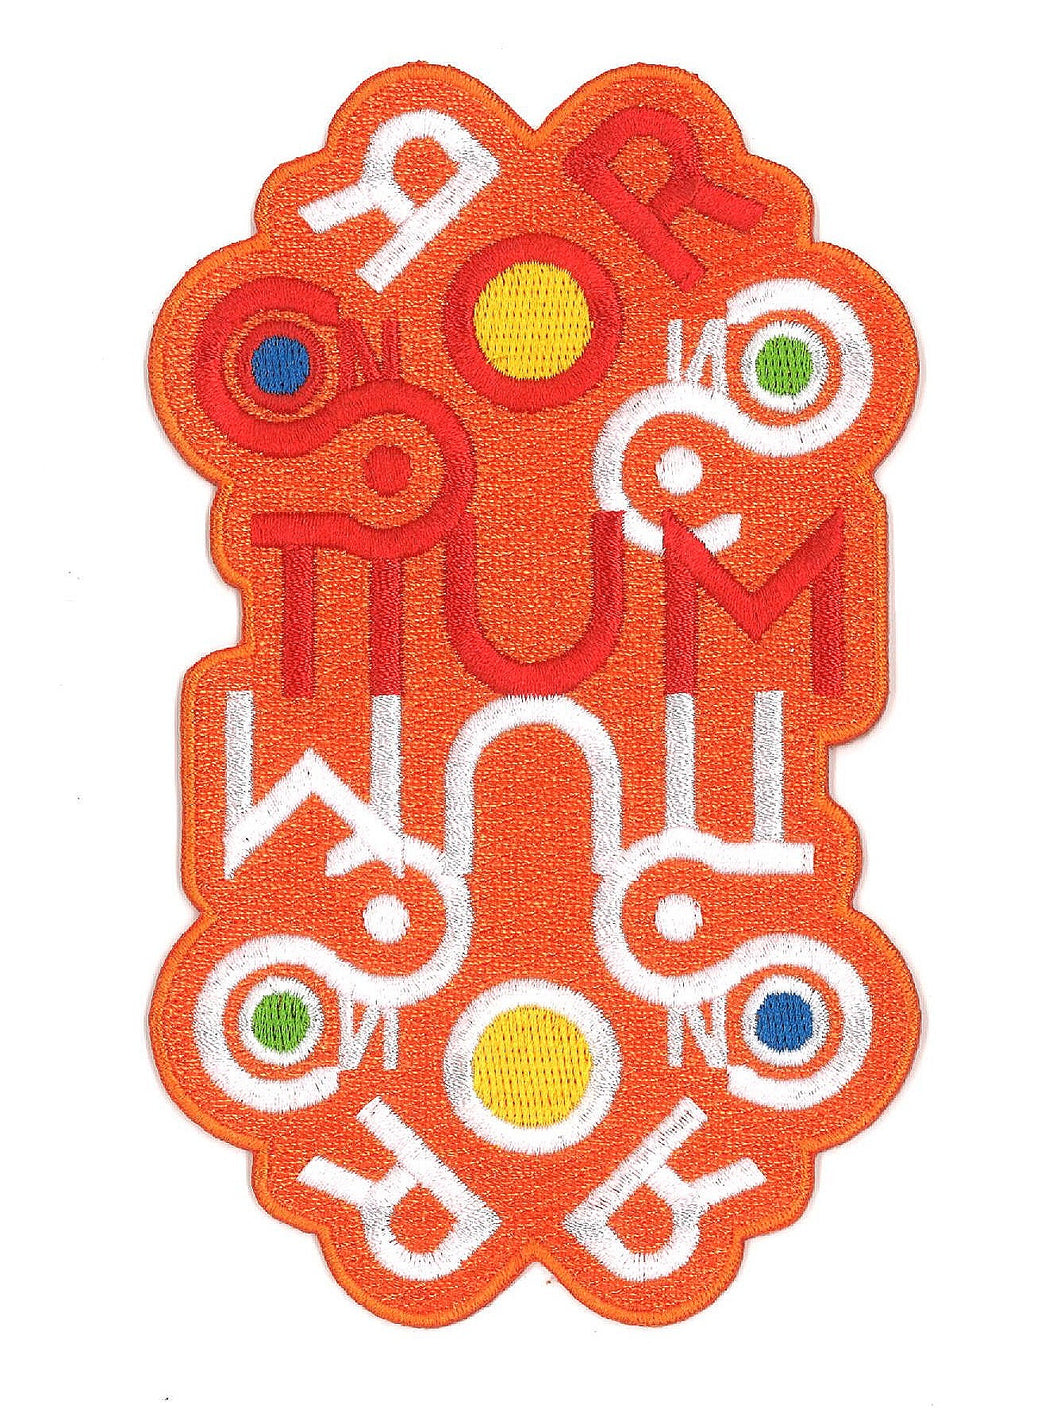 Embroidered Consortium Museum logo (M/M studio)